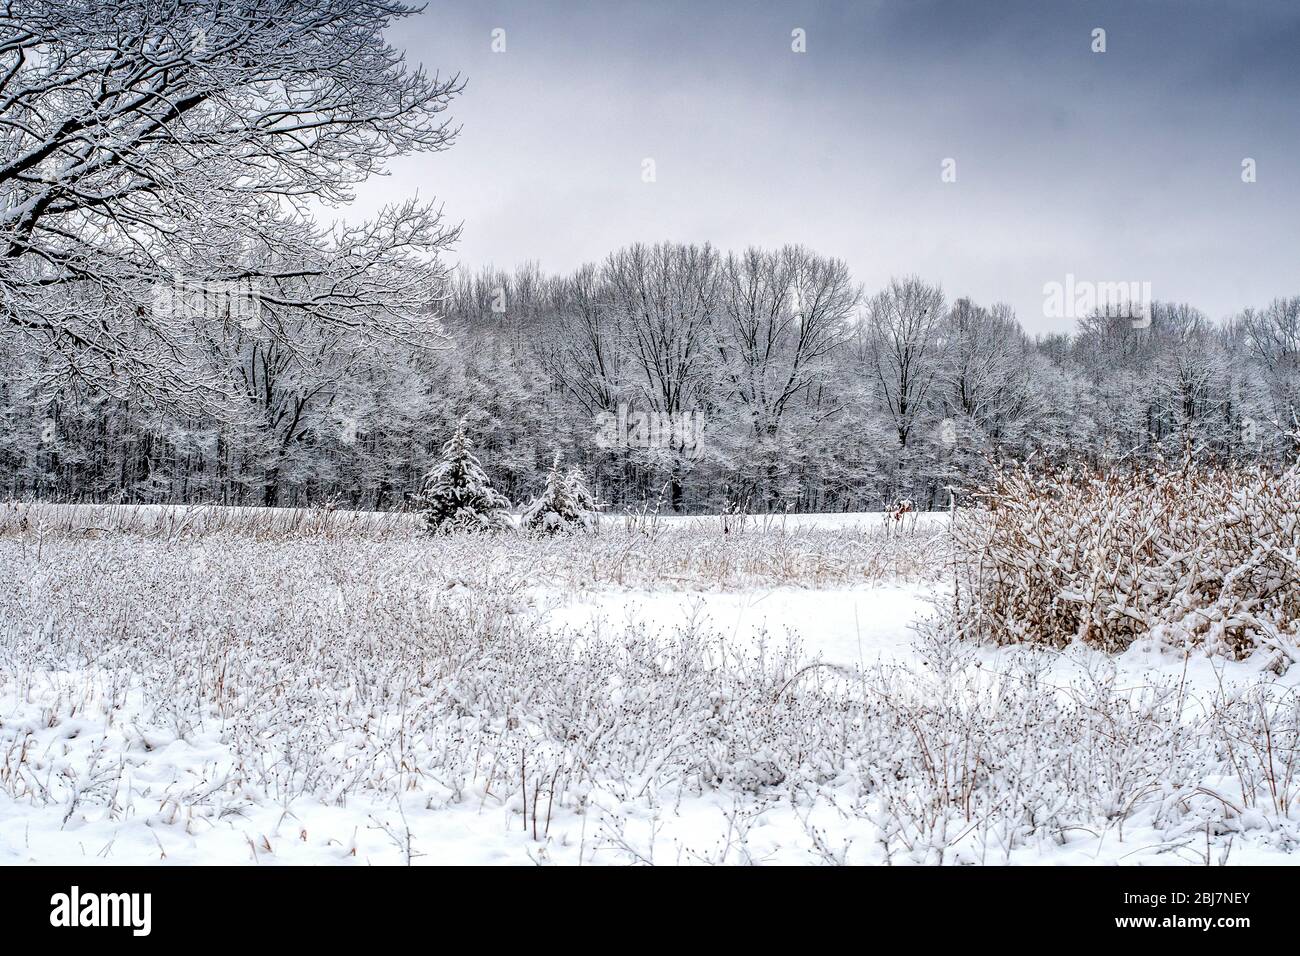 La neige au début du printemps est souvent une surprise, mais elle a rendu ce beau paysage au Michigan des États-Unis , look magique Banque D'Images